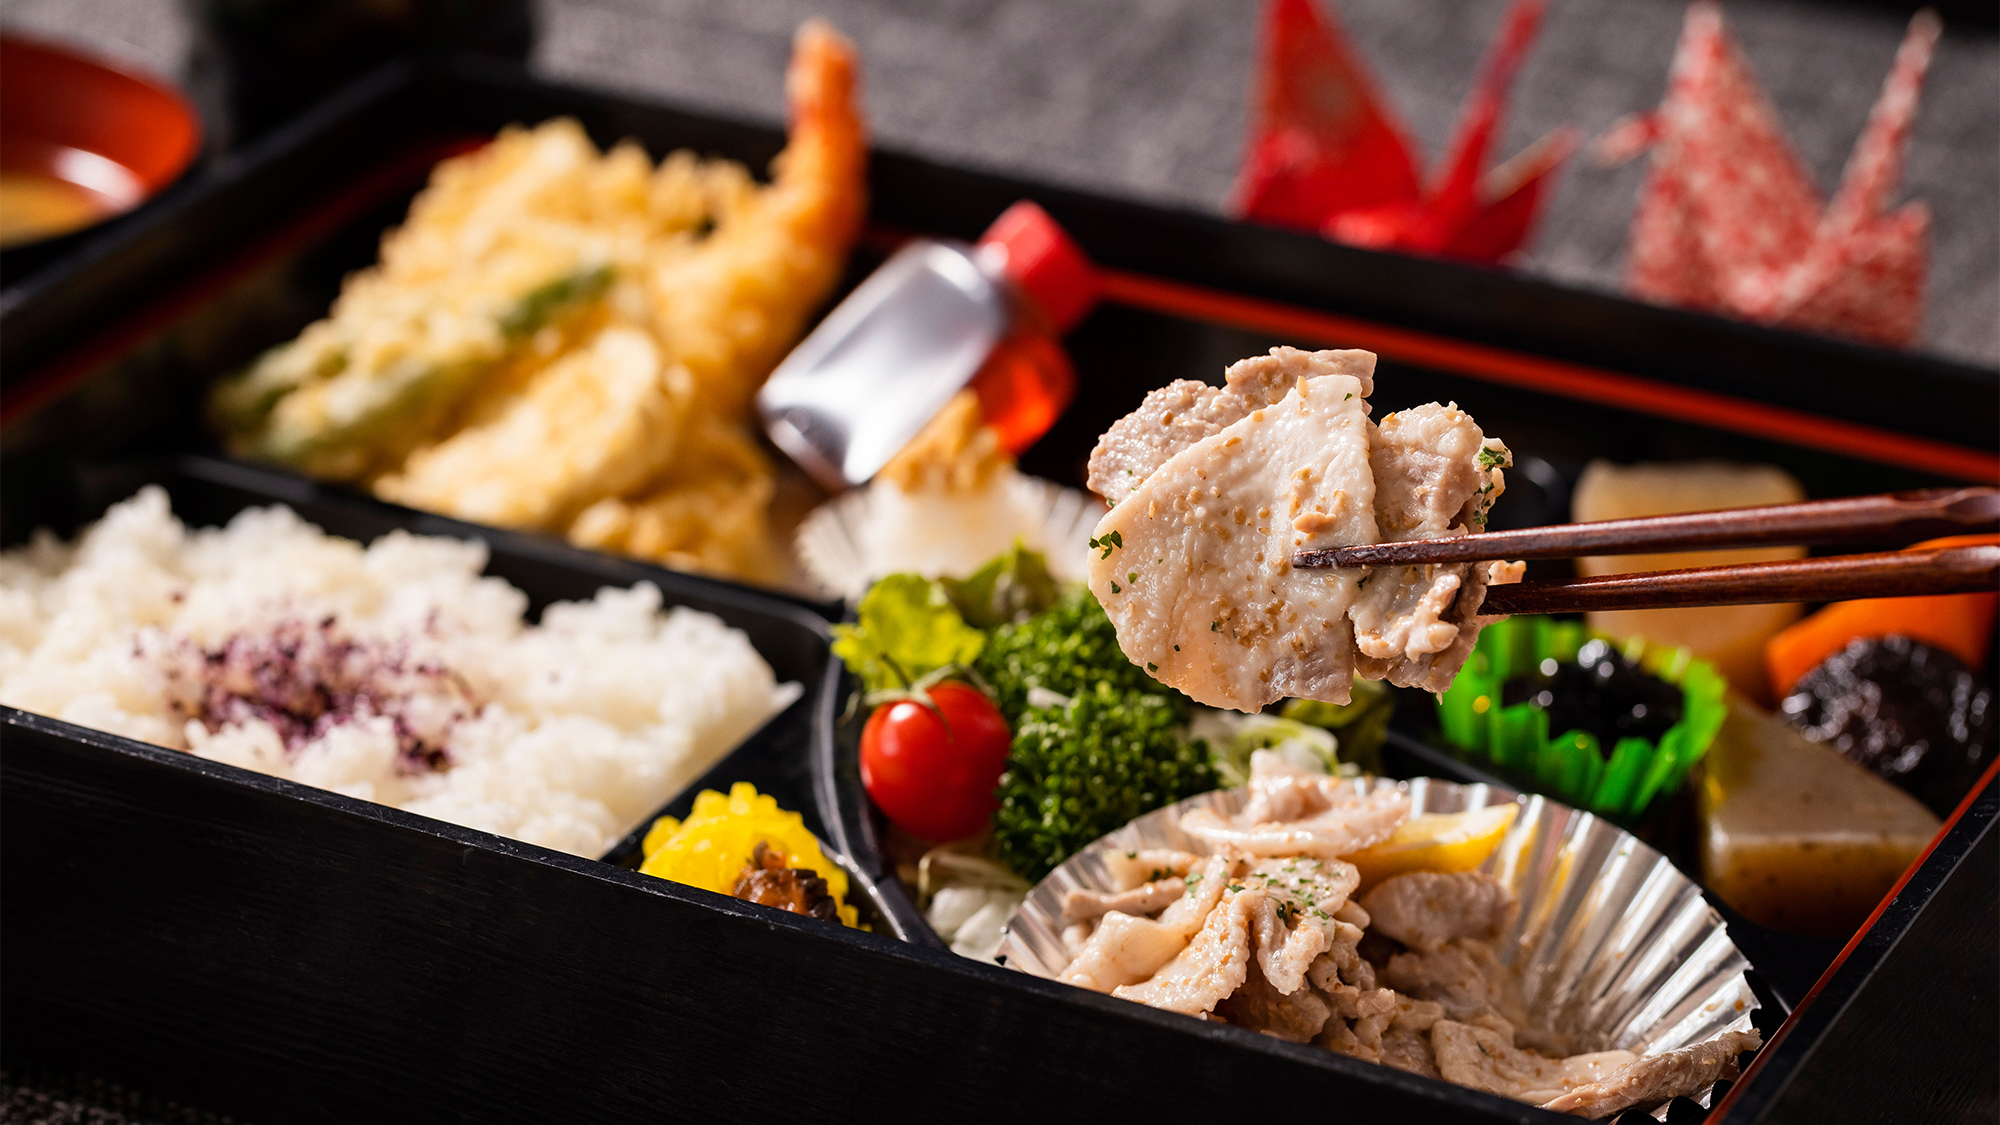 茨城3大ブランド肉でもある「ローズポーク」使用。肉質柔らかで、噛むほどに豚の本来の甘みが広がります。